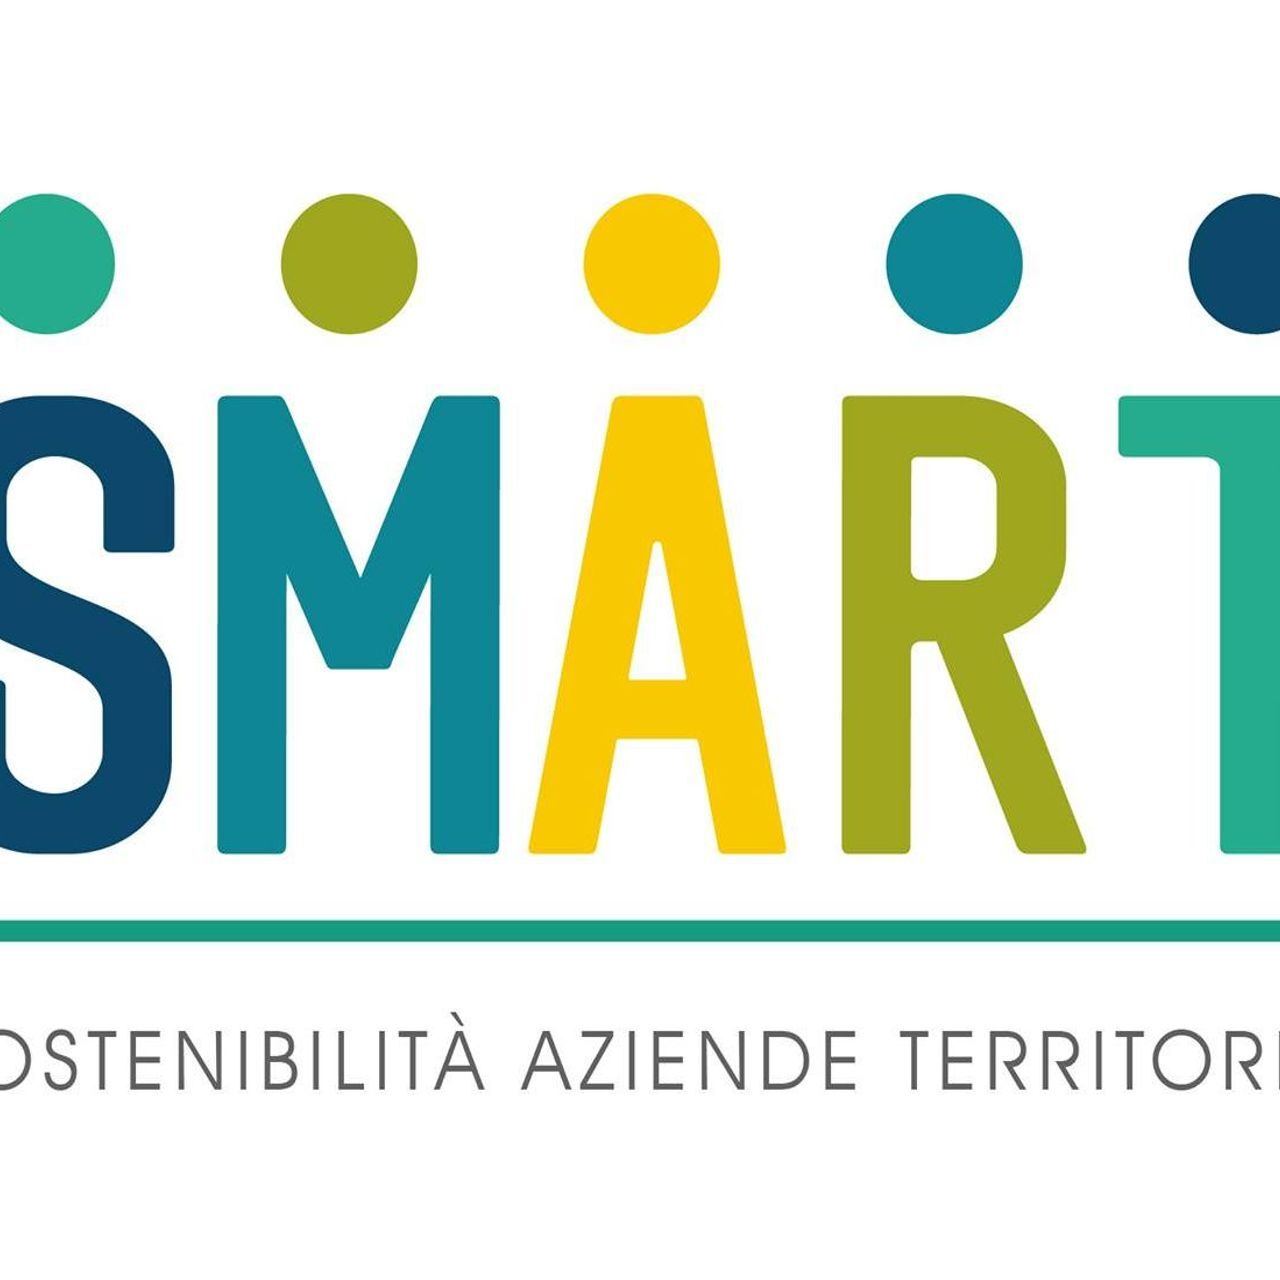 SMART նախագծի լոգոն (Կայուն ռազմավարություններ և պատասխանատու բիզնես մոդելներ անդրսահմանային տարածքում)